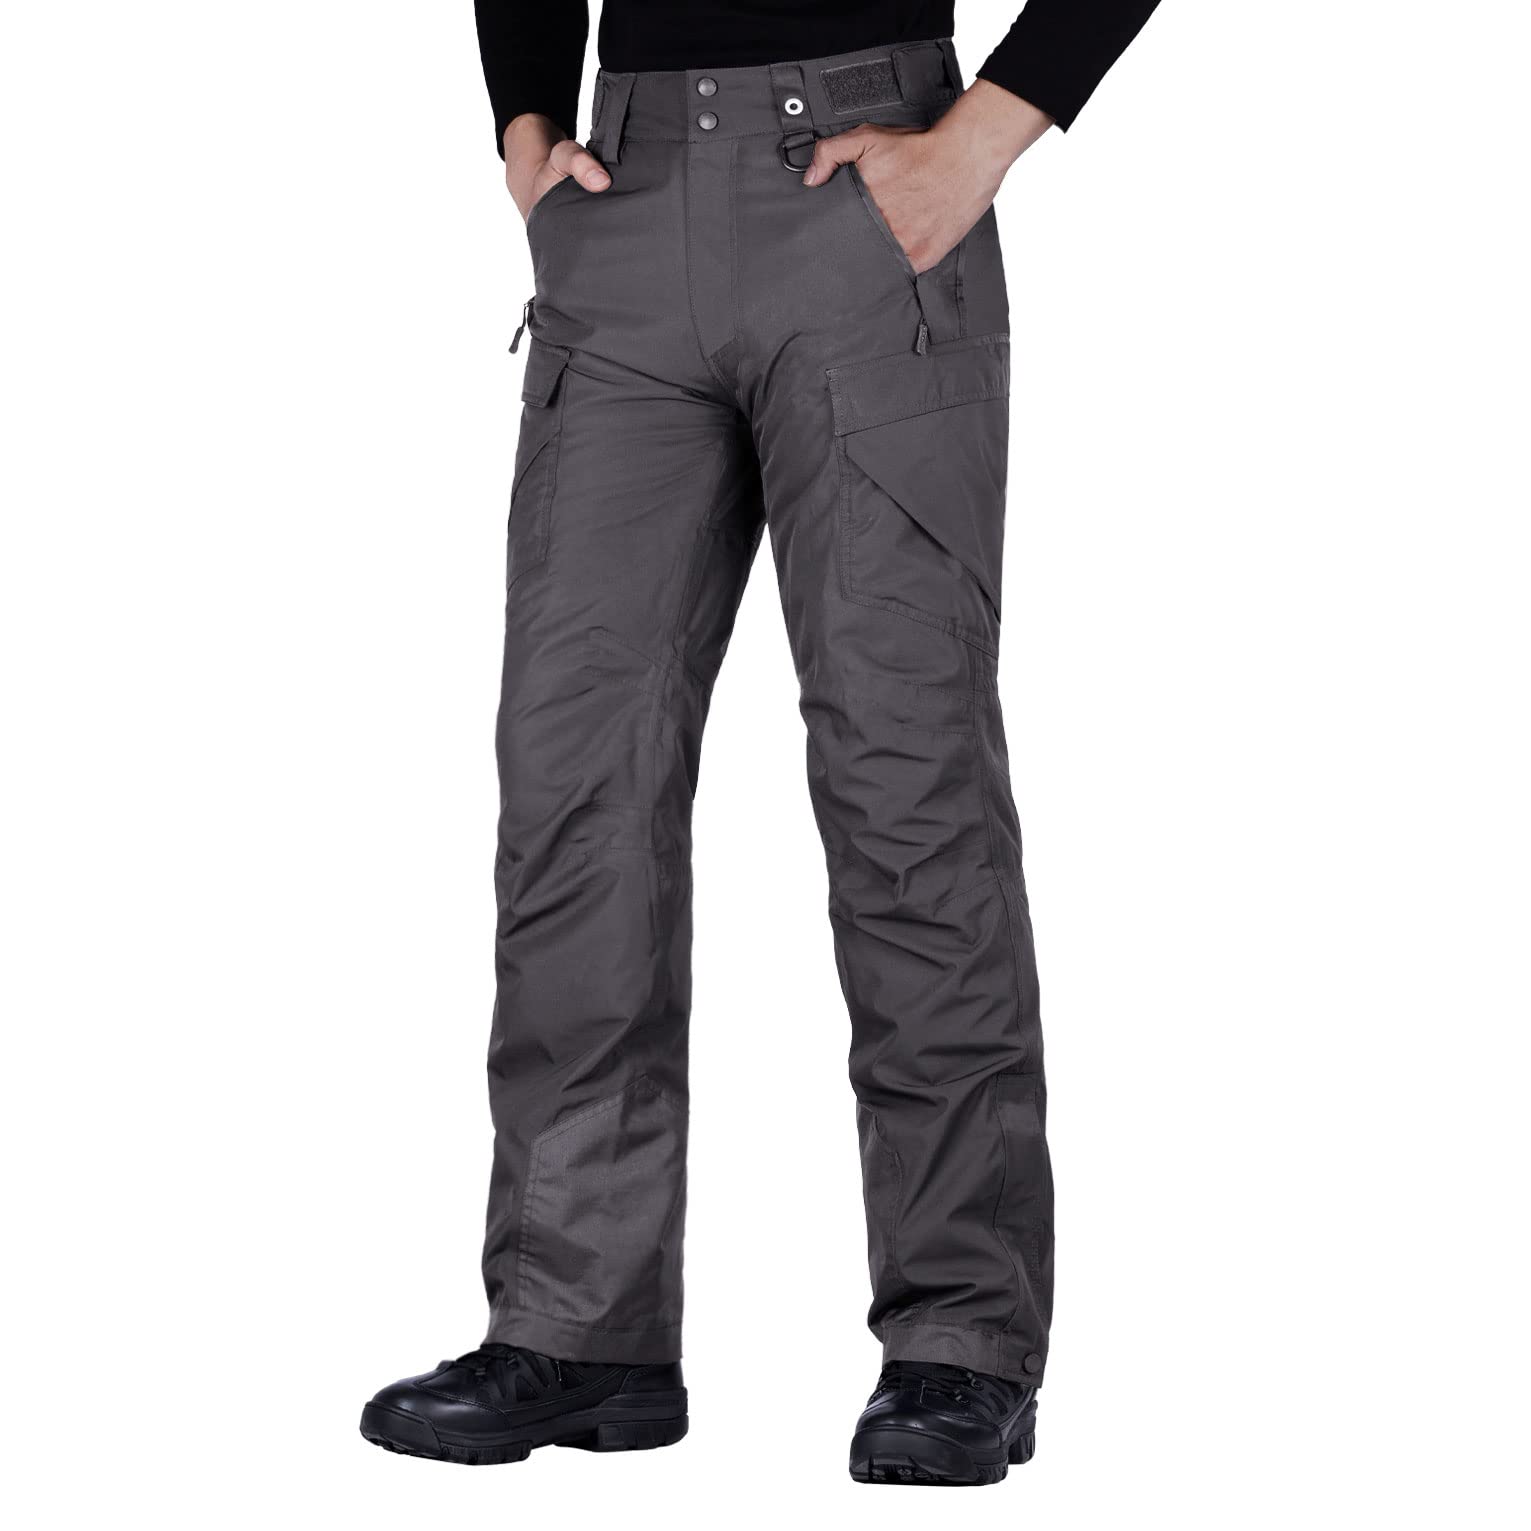 Pantalones esquí Zero Rh+ Slim Hombre - Ropa esquí